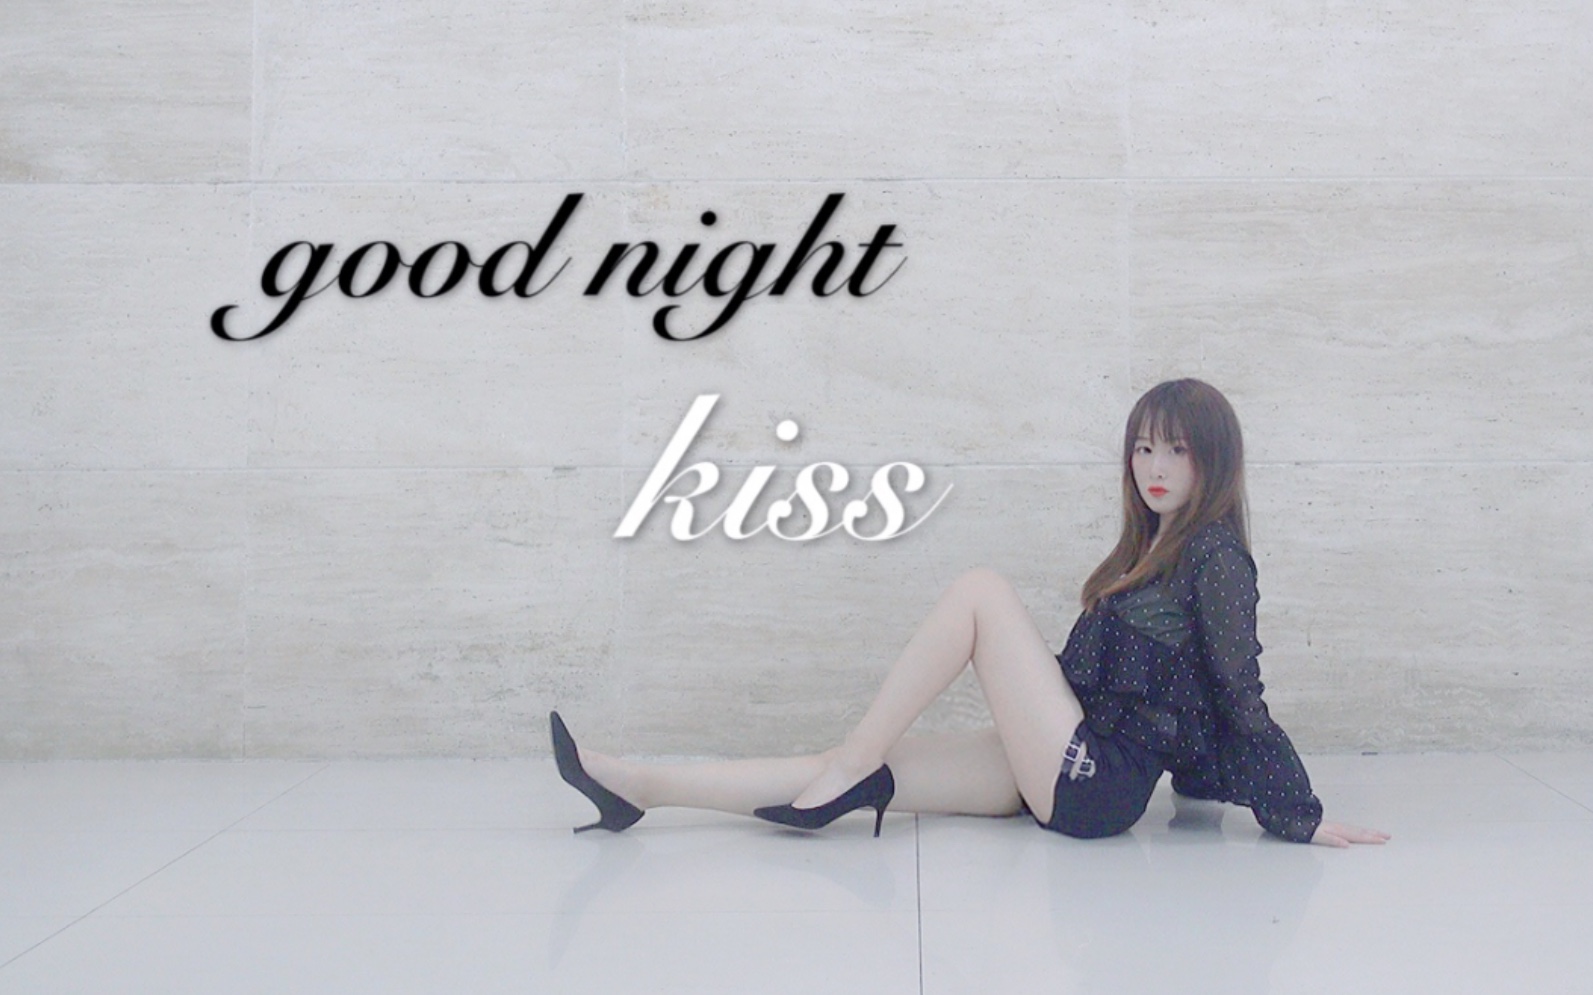 【芽芽郁】全孝盛-good night kiss 不拉腿挑战 竖屏更近一点